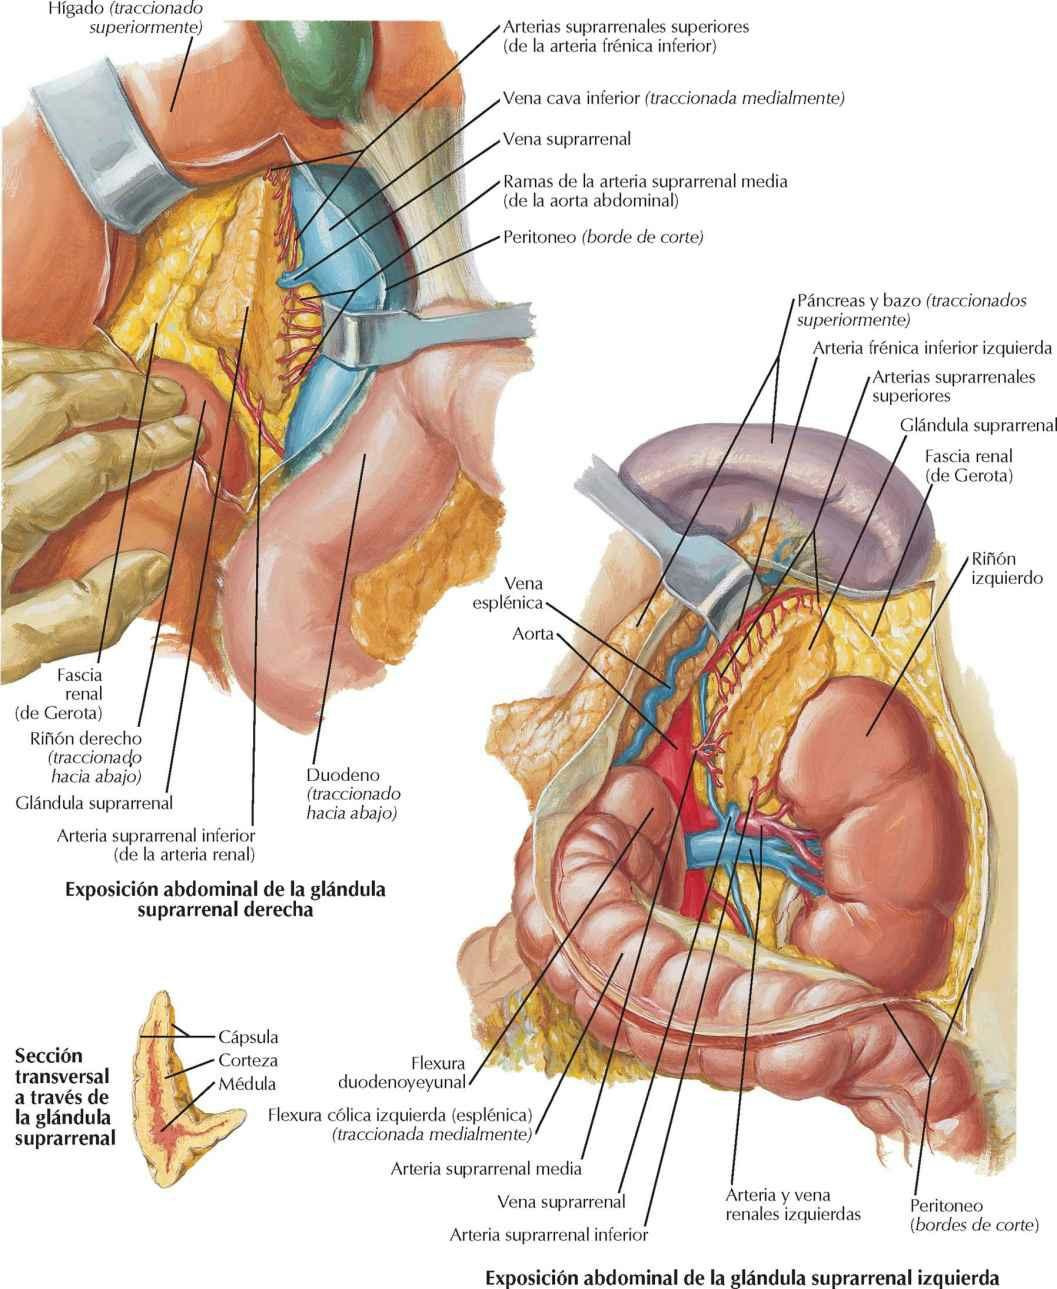 Arterias y venas de las glándulas suprarrenales in situ